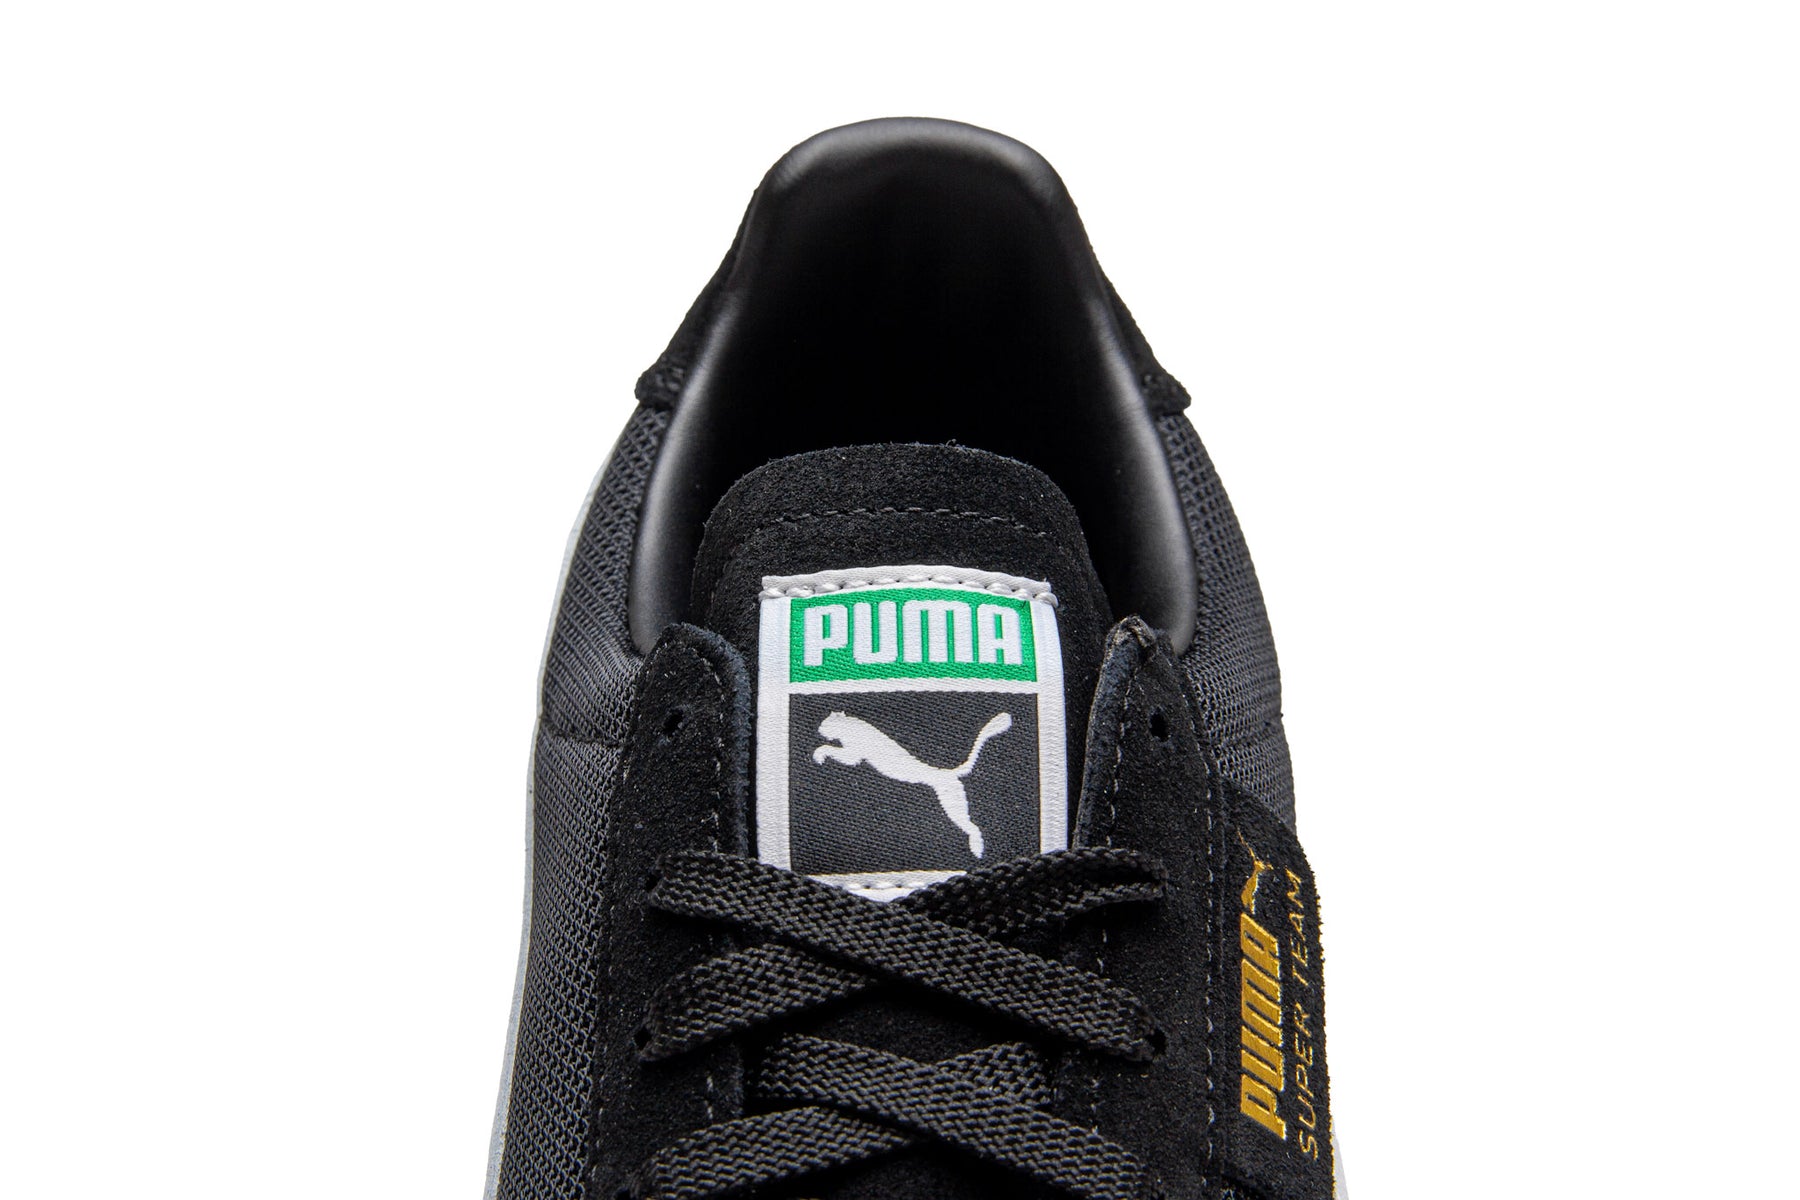 Puma Super Team OG "Black" - Men